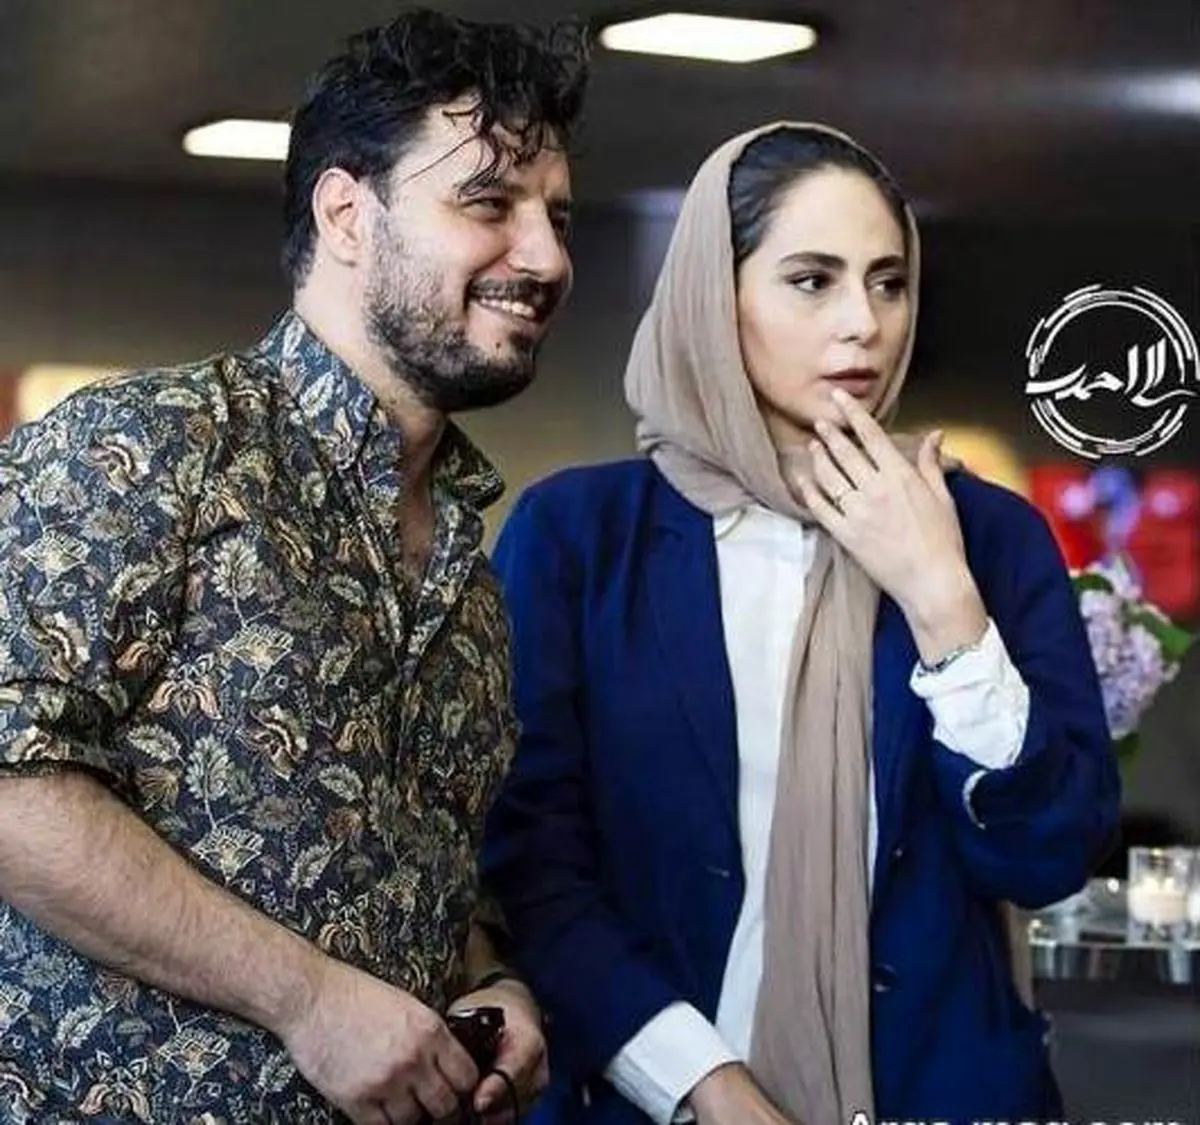 واکنش عجیب جواد عزتی به بغل کردن همسرش در جشن حافظ | جدایی جواد عزتی از همسرش علنی شد